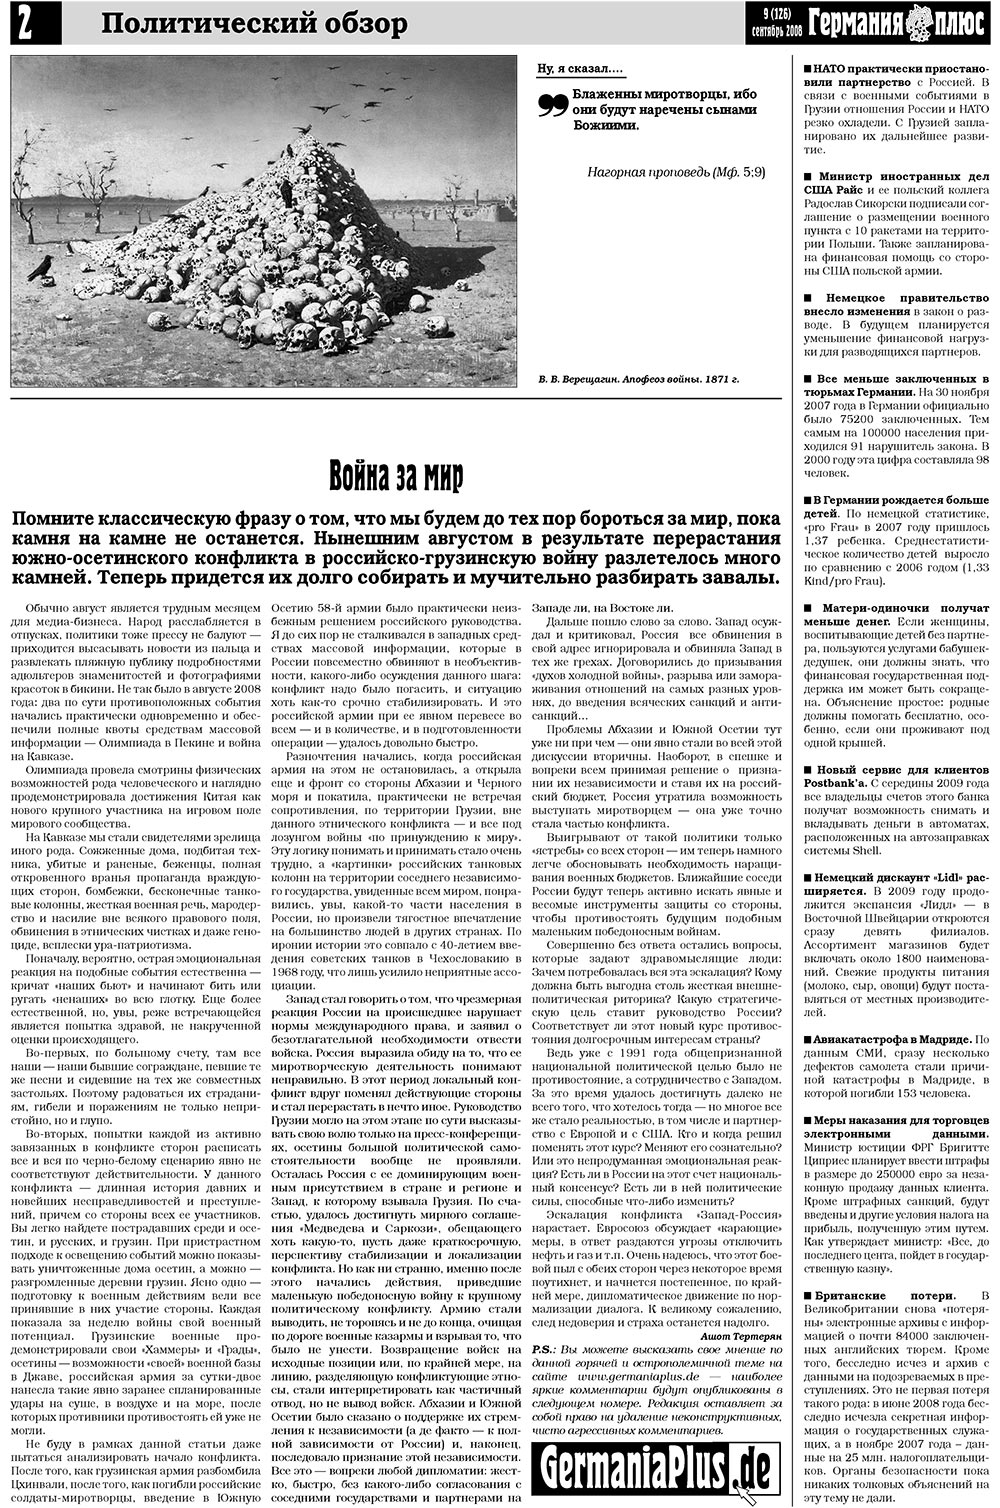 Германия плюс (газета). 2008 год, номер 9, стр. 2